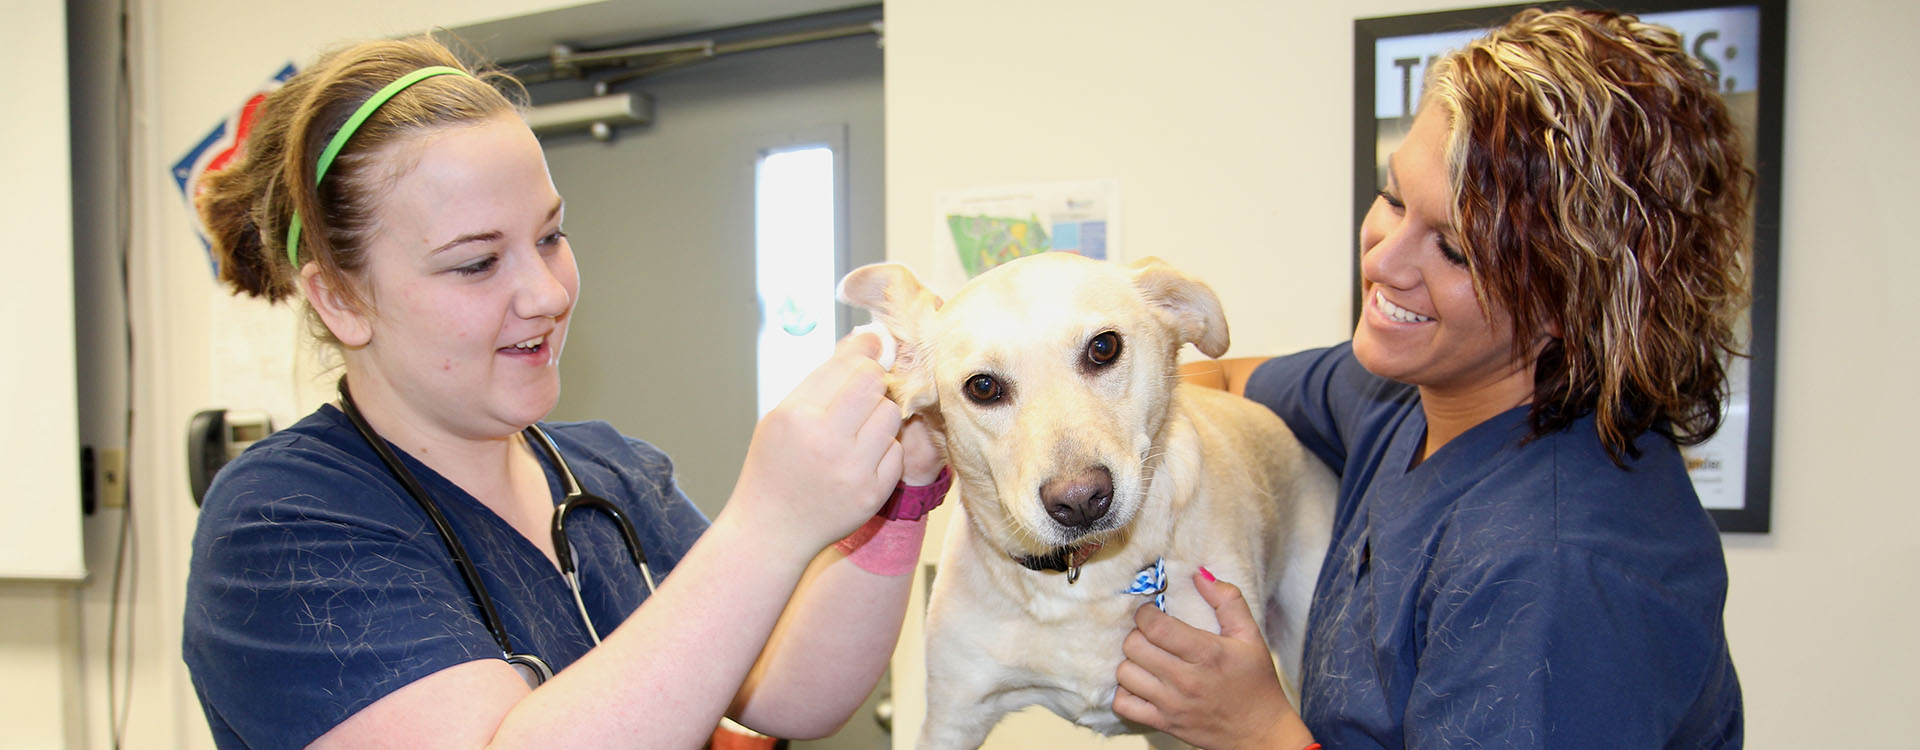 veterinary students examining a dog